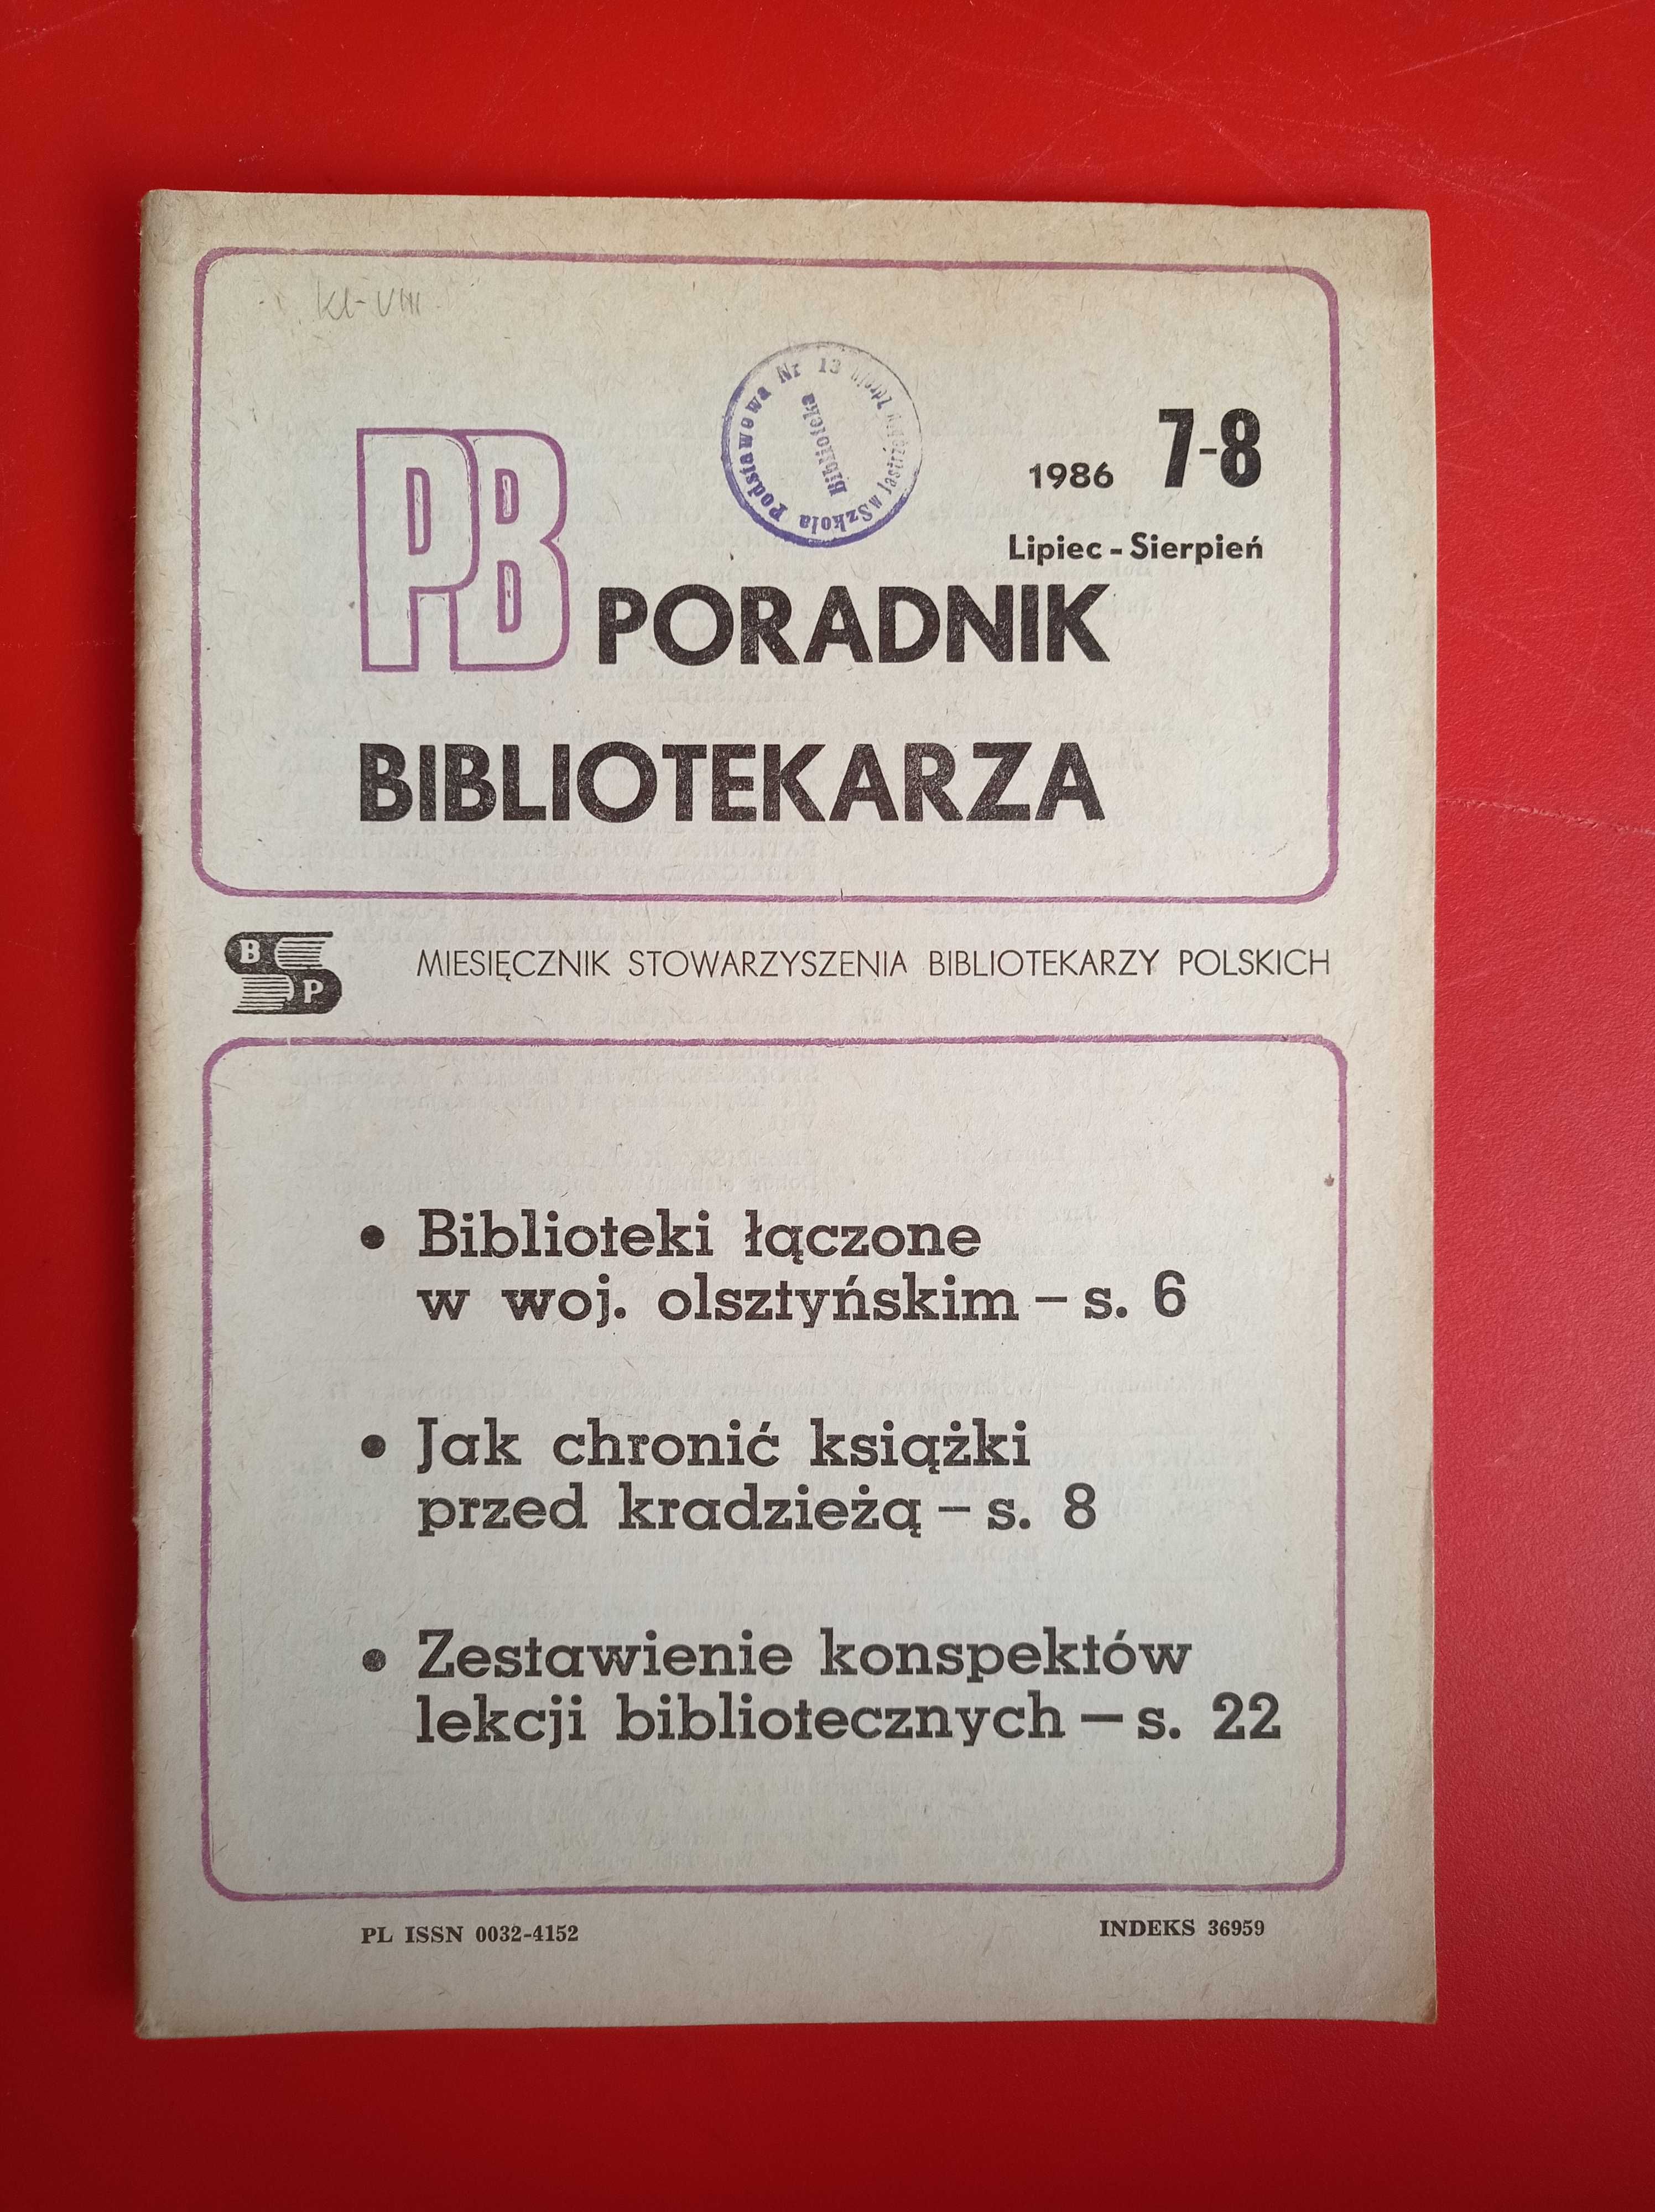 Poradnik Bibliotekarza, nr 7-8/1986, lipiec-sierpień 1986